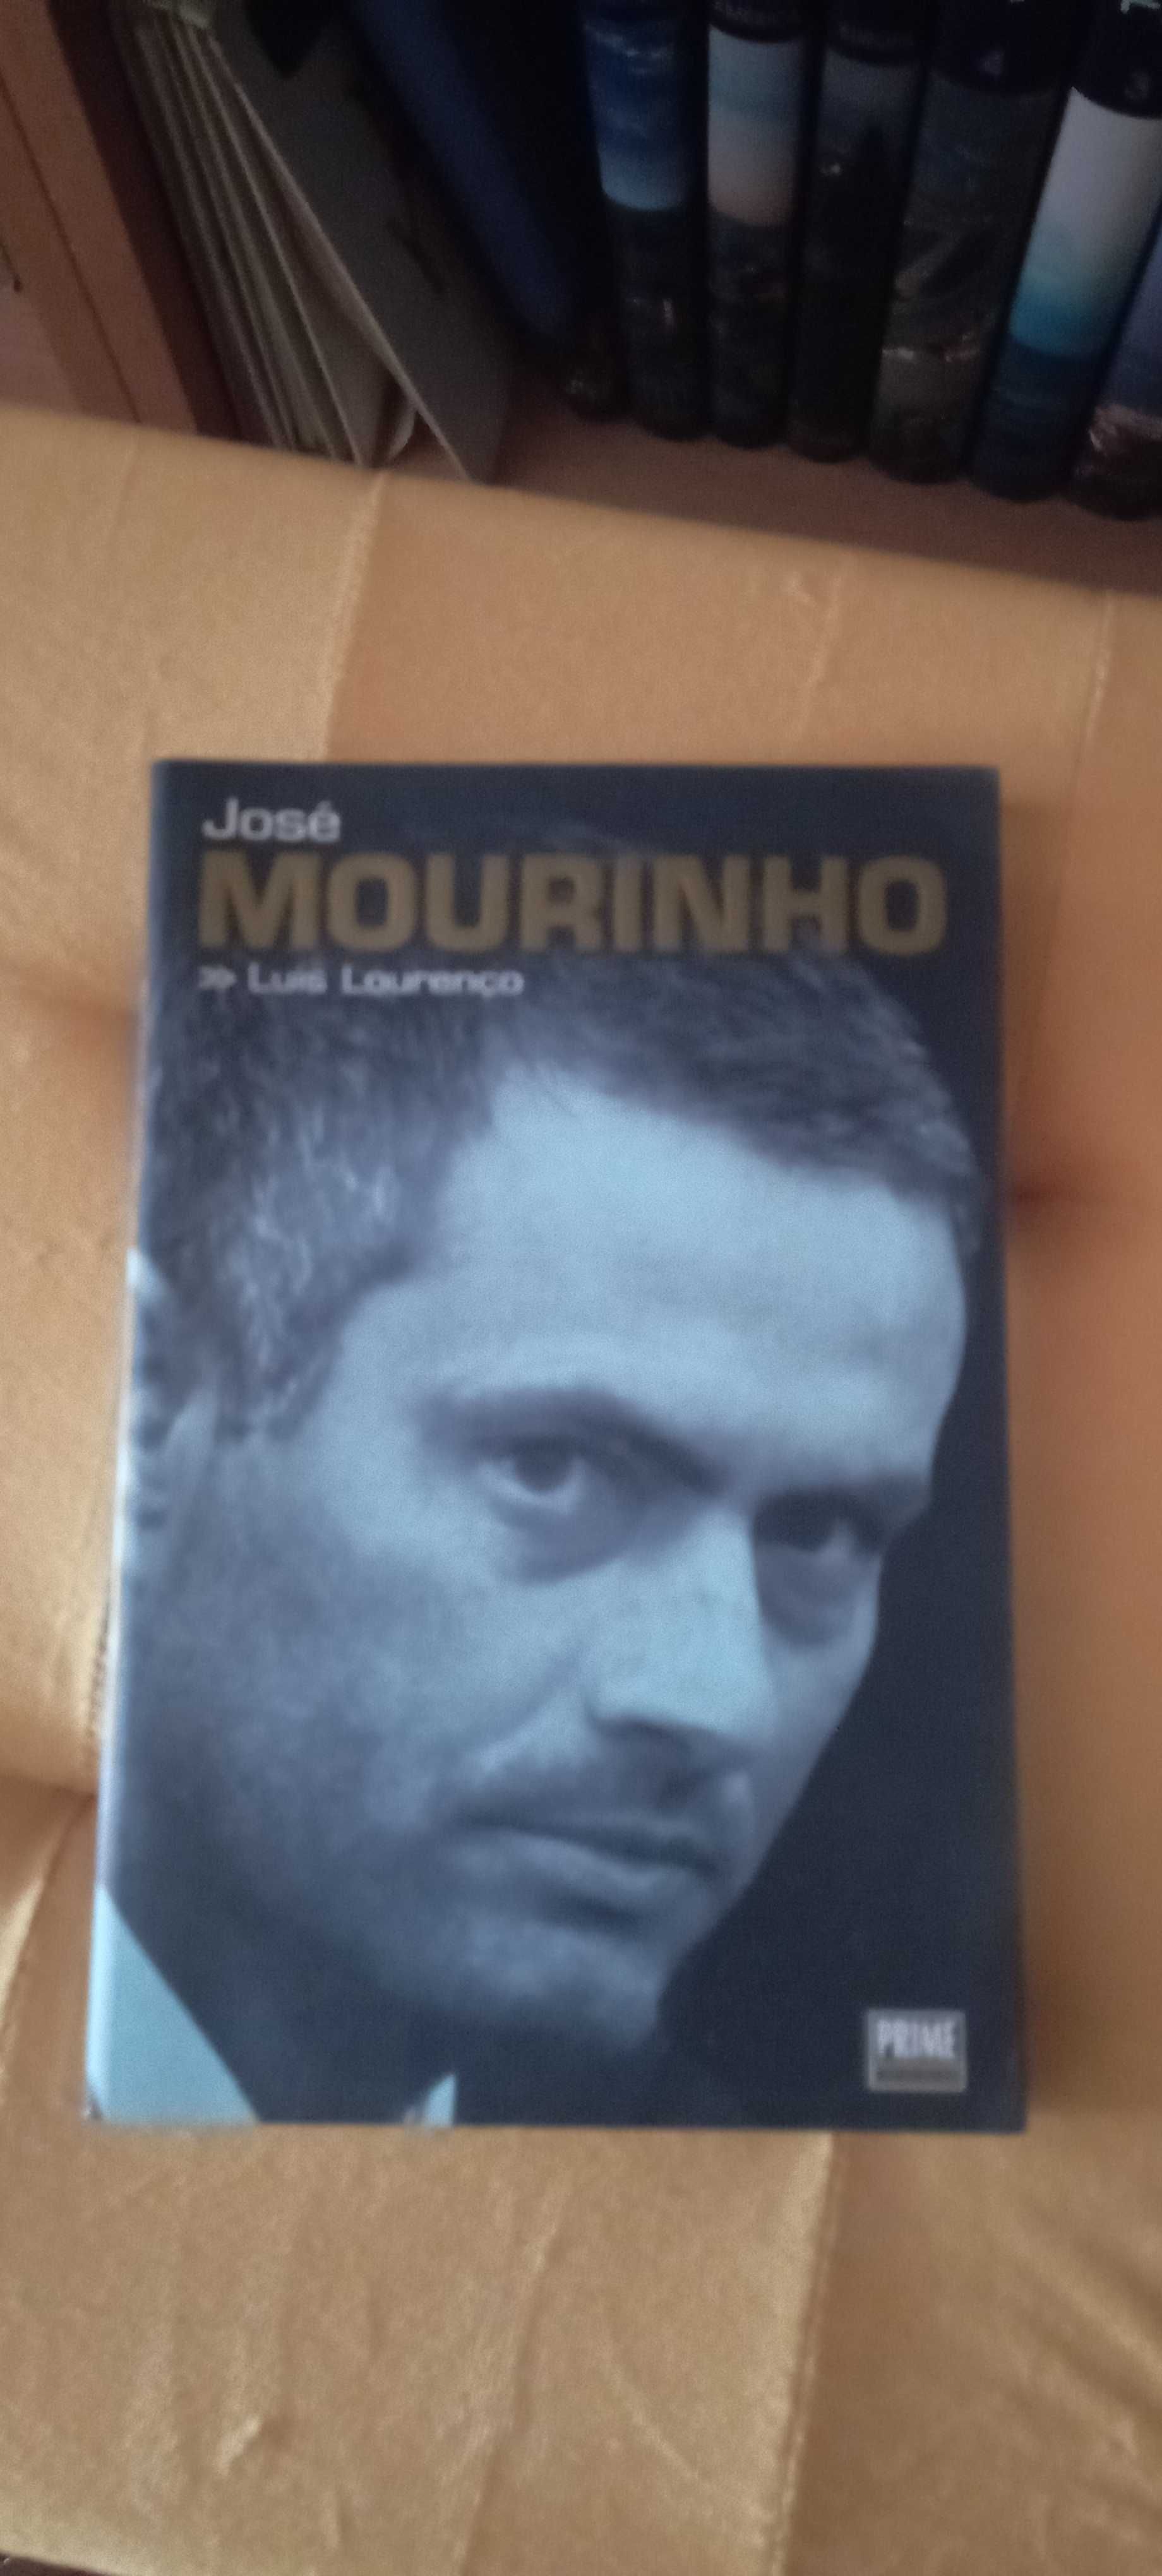 José Mourinho - Biografia